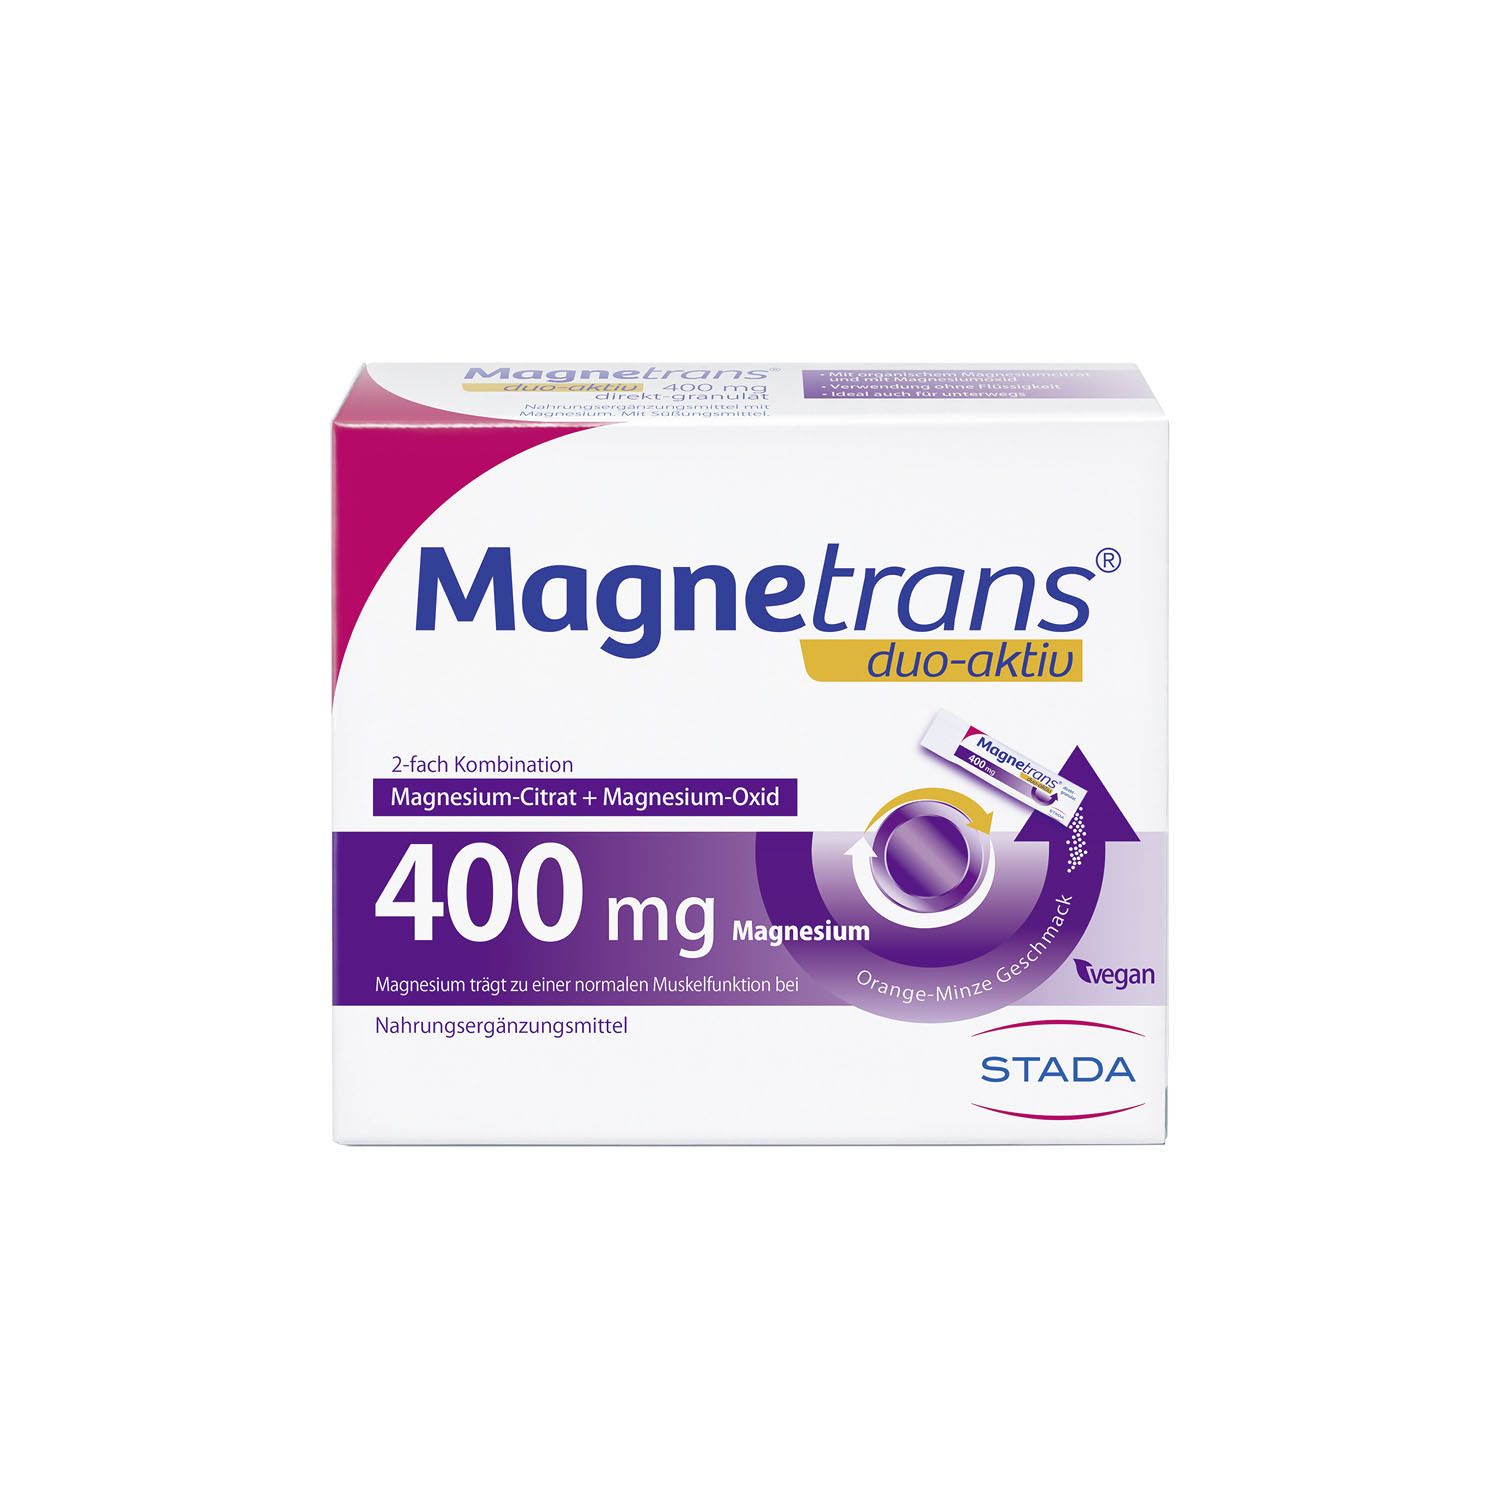 Magnetrans® duo-aktiv 400 mg Direktgranulat-Sticks - 2 Euro Sofortrabatt*